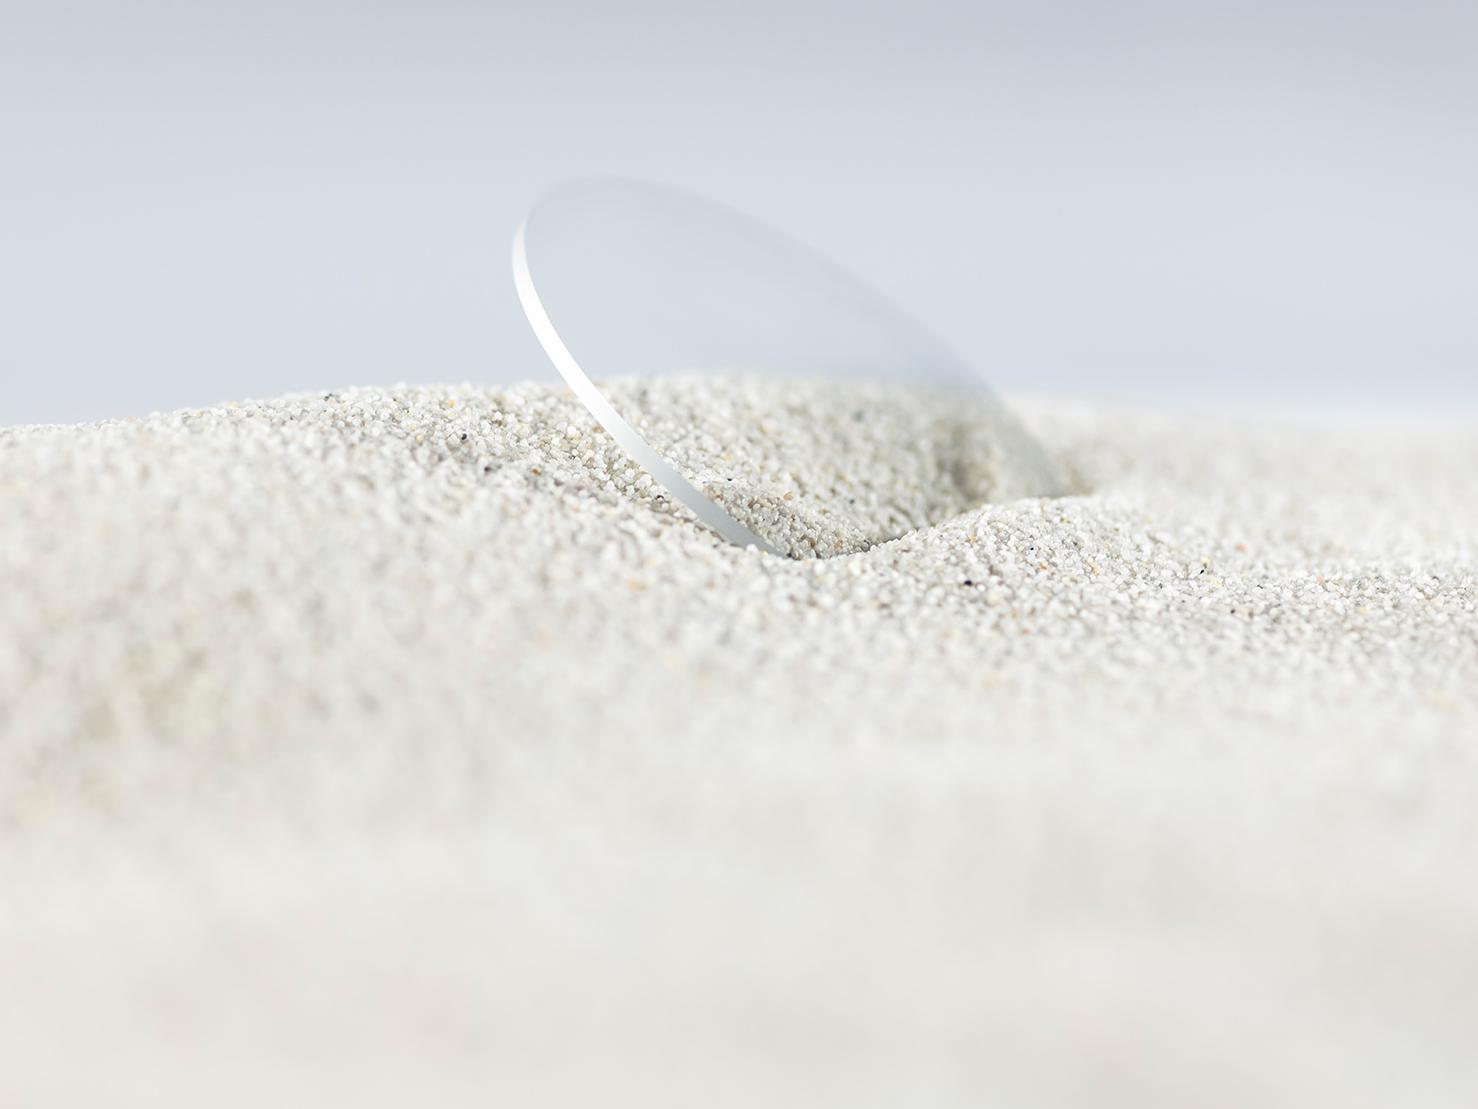 Ein ZEISS Brillenglas mit einer robusten Beschichtung wird von grobem Sand bedeckt und hat trotzdem keine Kratzer.